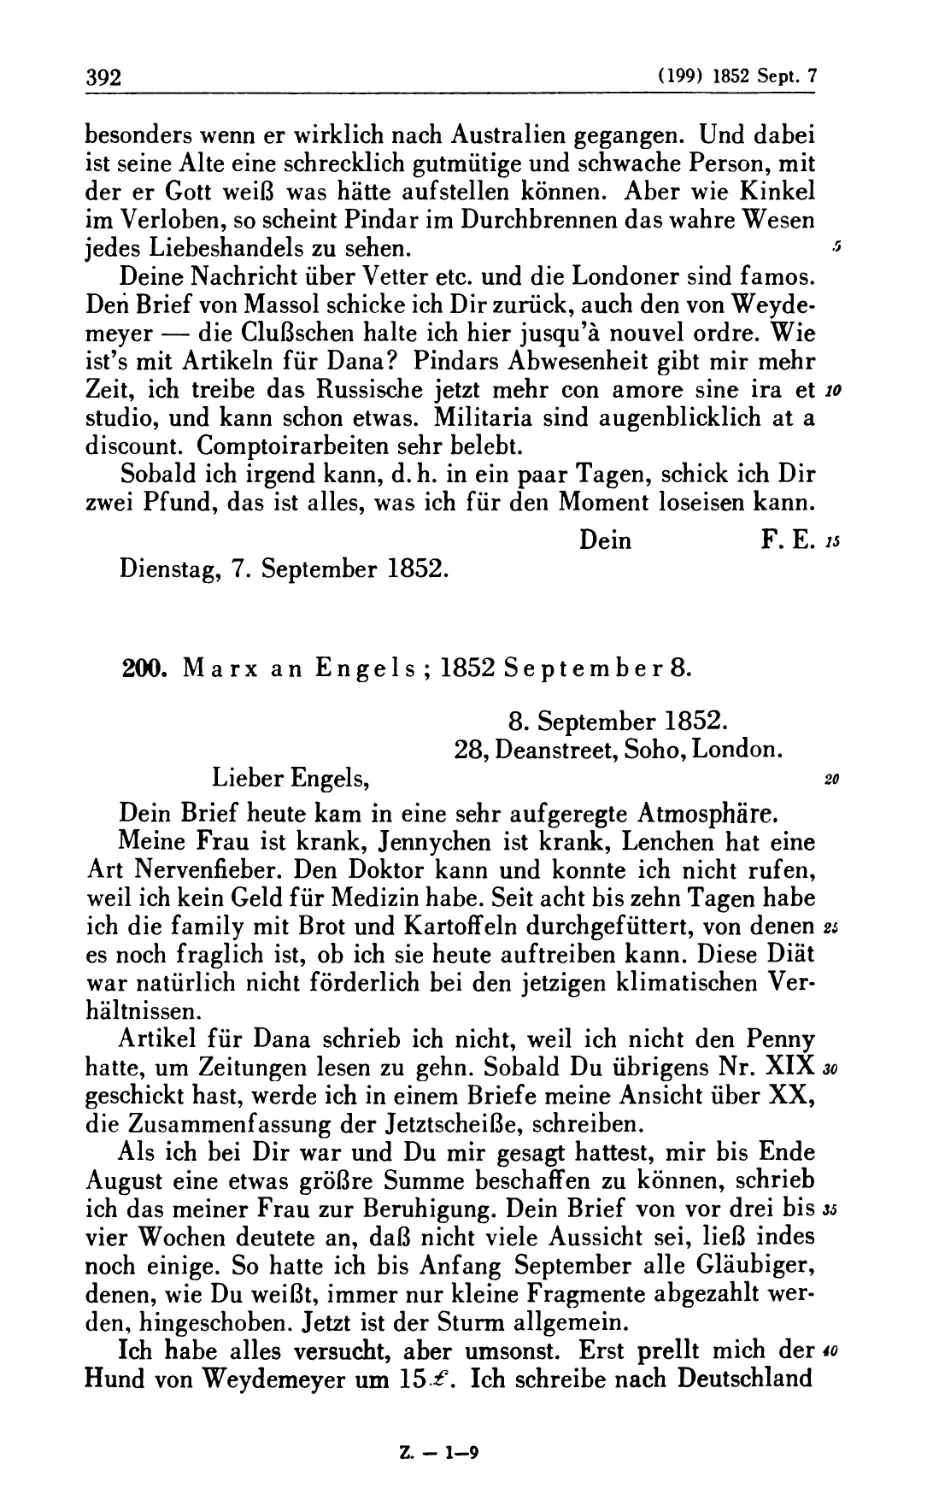 200. Marx an Engels; 1852 September 8